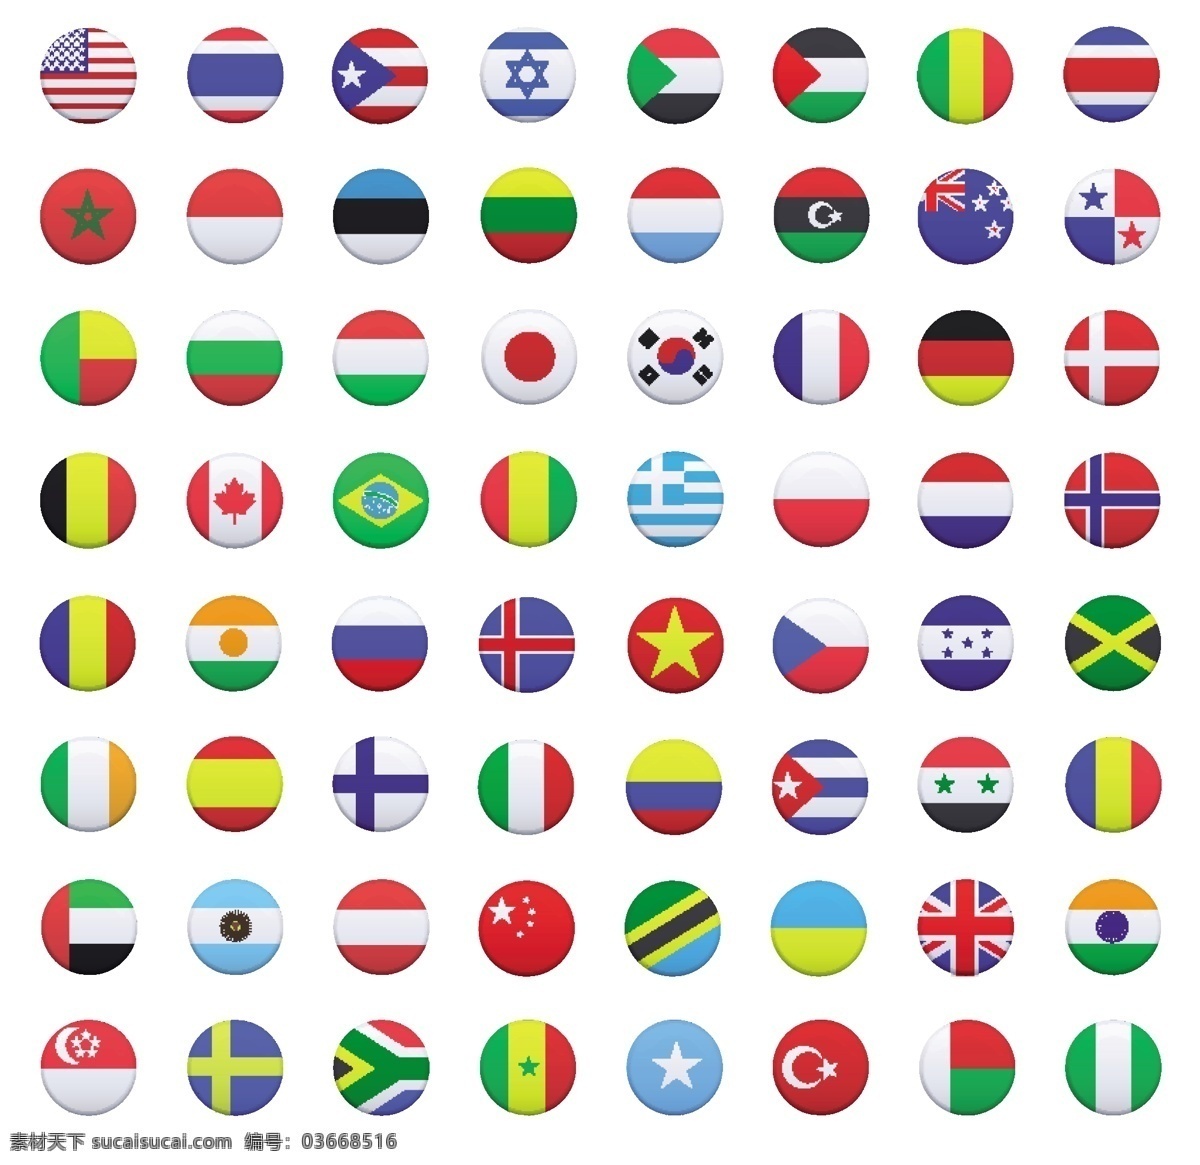 国旗 各国国旗 世界各国 标志 标识 手绘 矢量 国旗标志 图标 标签 logo 小图标 标识标志图标